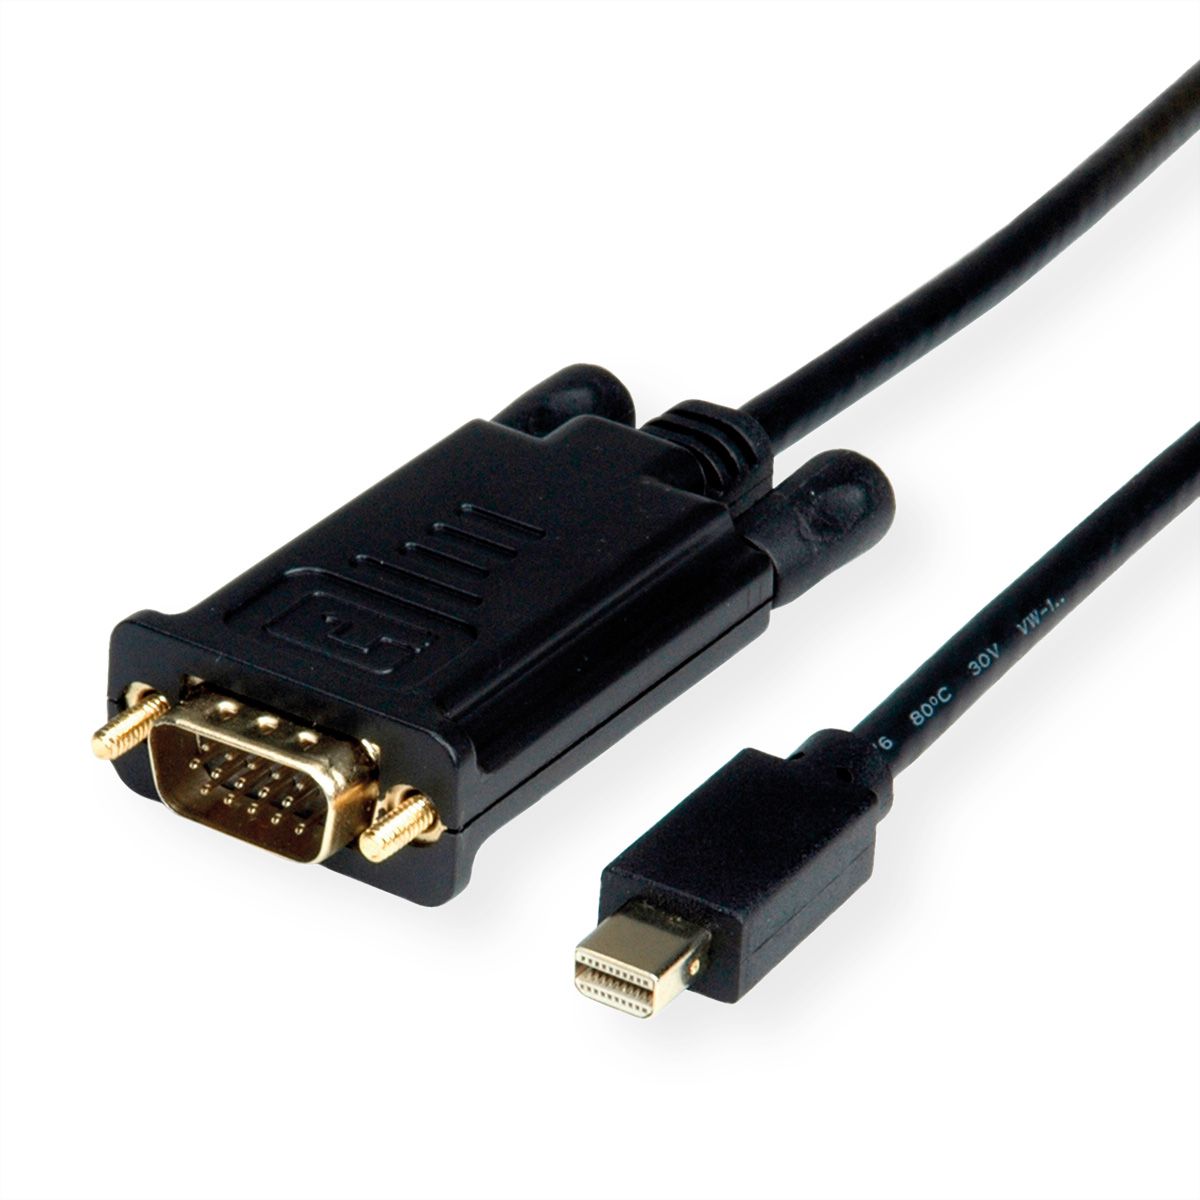 ROLINE Cable MiniDisplayPort - VGA, Mini DP M - VGA M, black, 1.5 m - SECOMP International AG